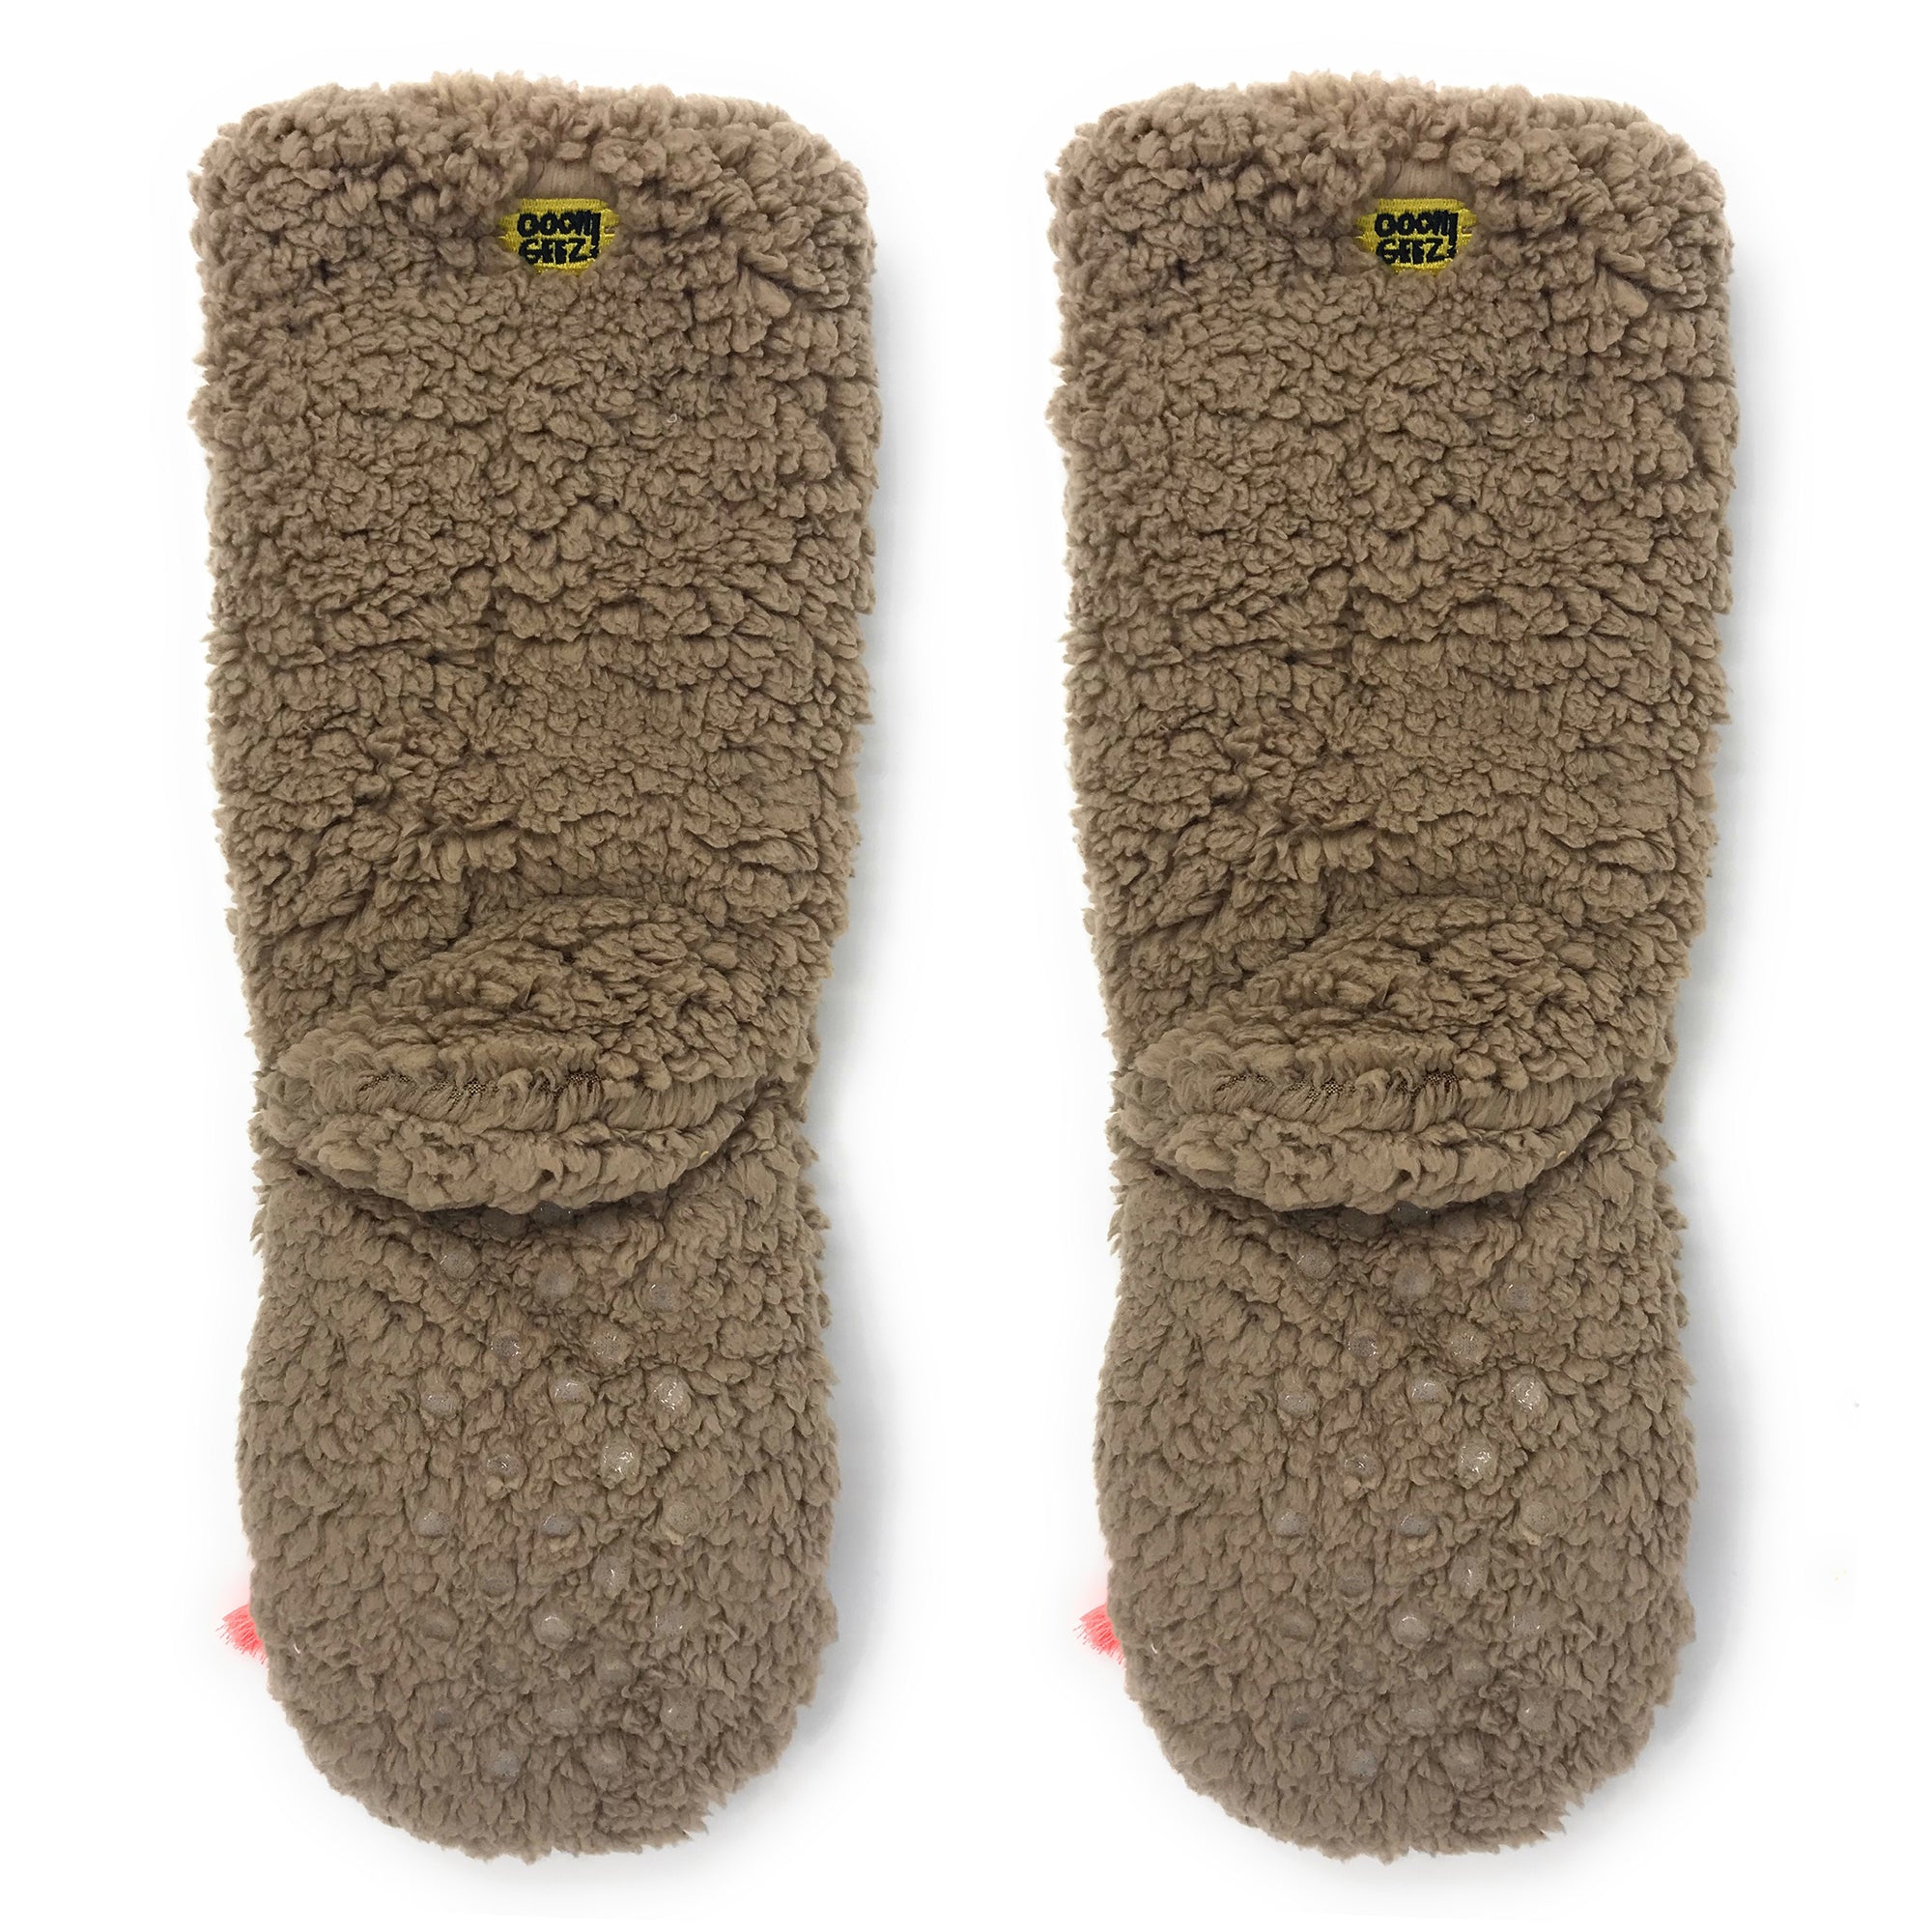 Adults' L.L.Bean Fleece Socks